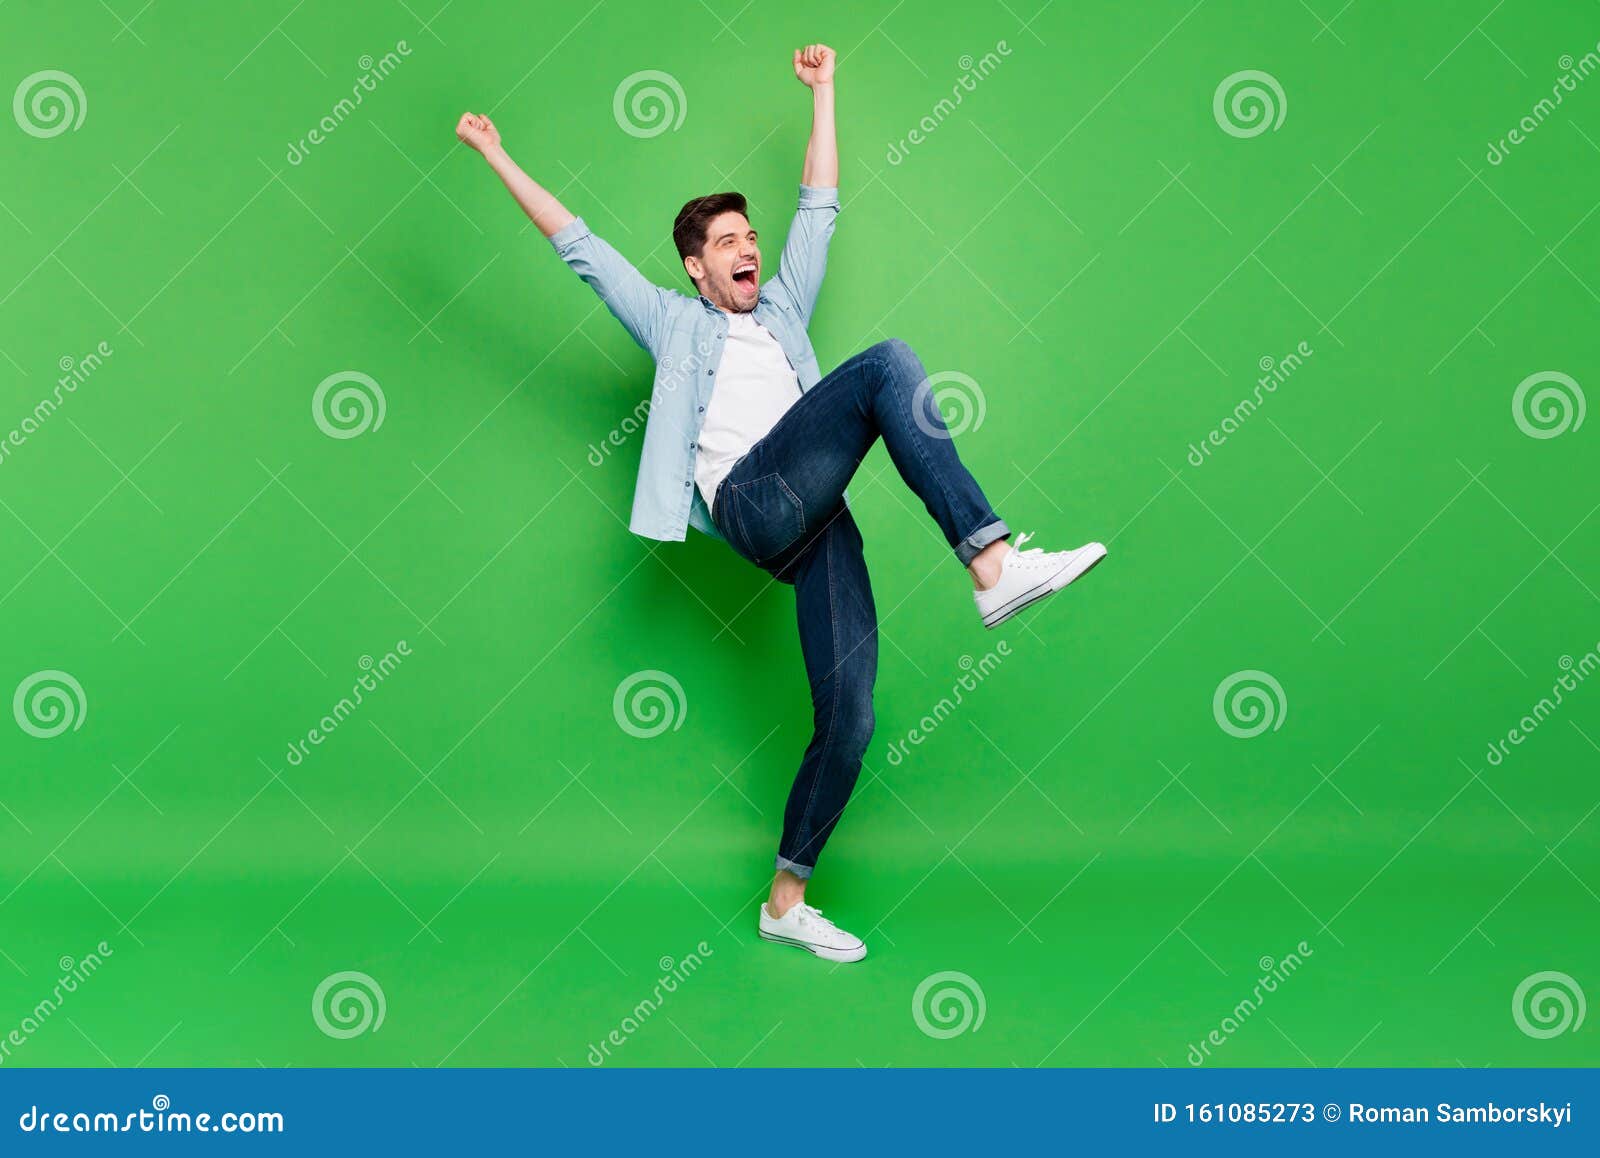 Full Body Profile Photo of Carefree Crazy Guy Yelling Celebrating ...